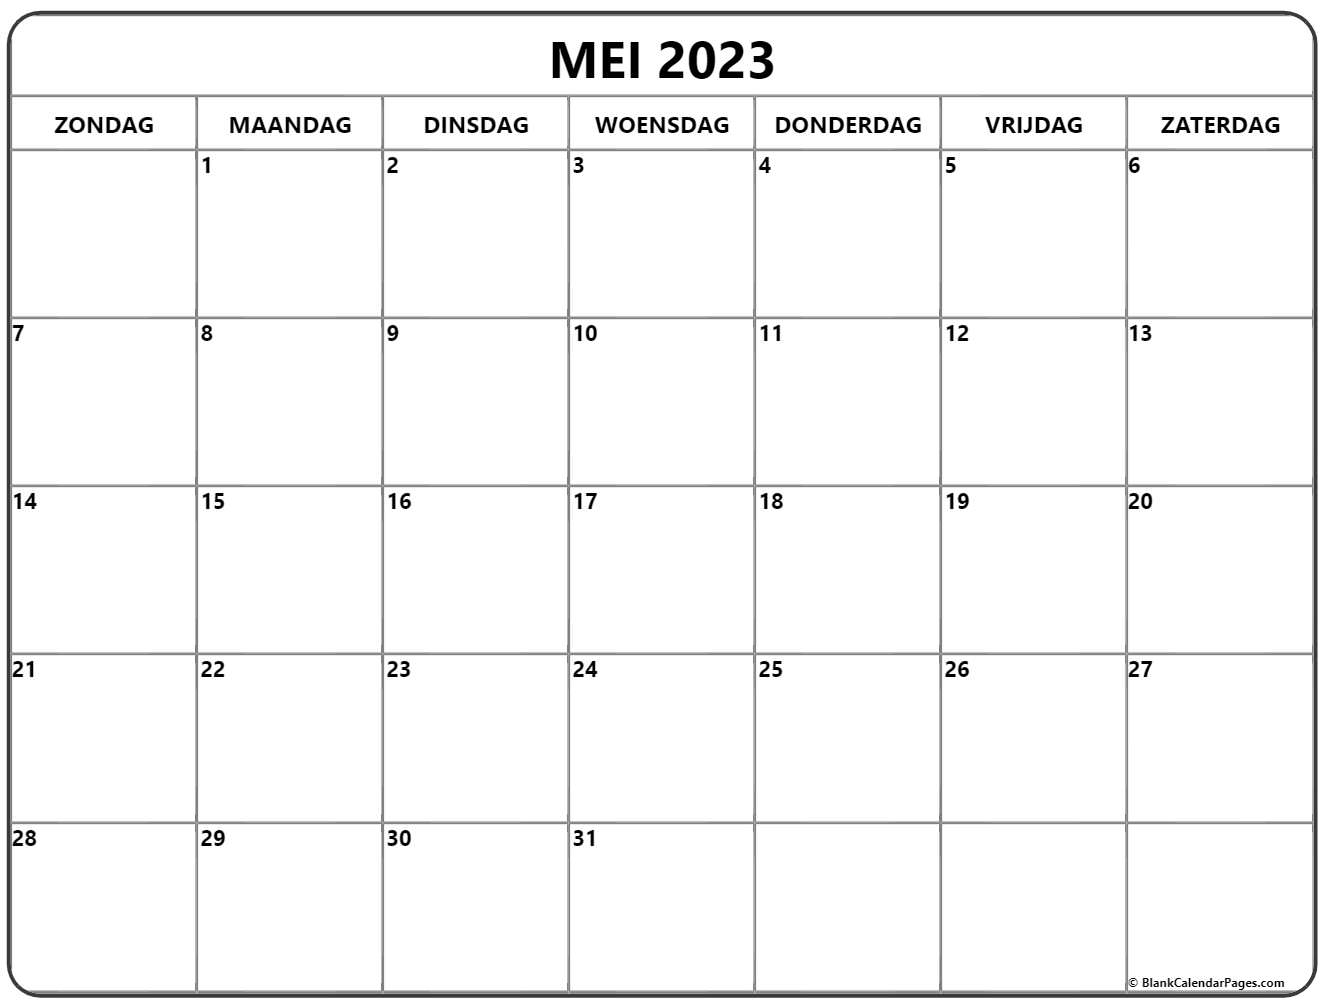 mei-2023-kalender-nederlandse-kalender-mei